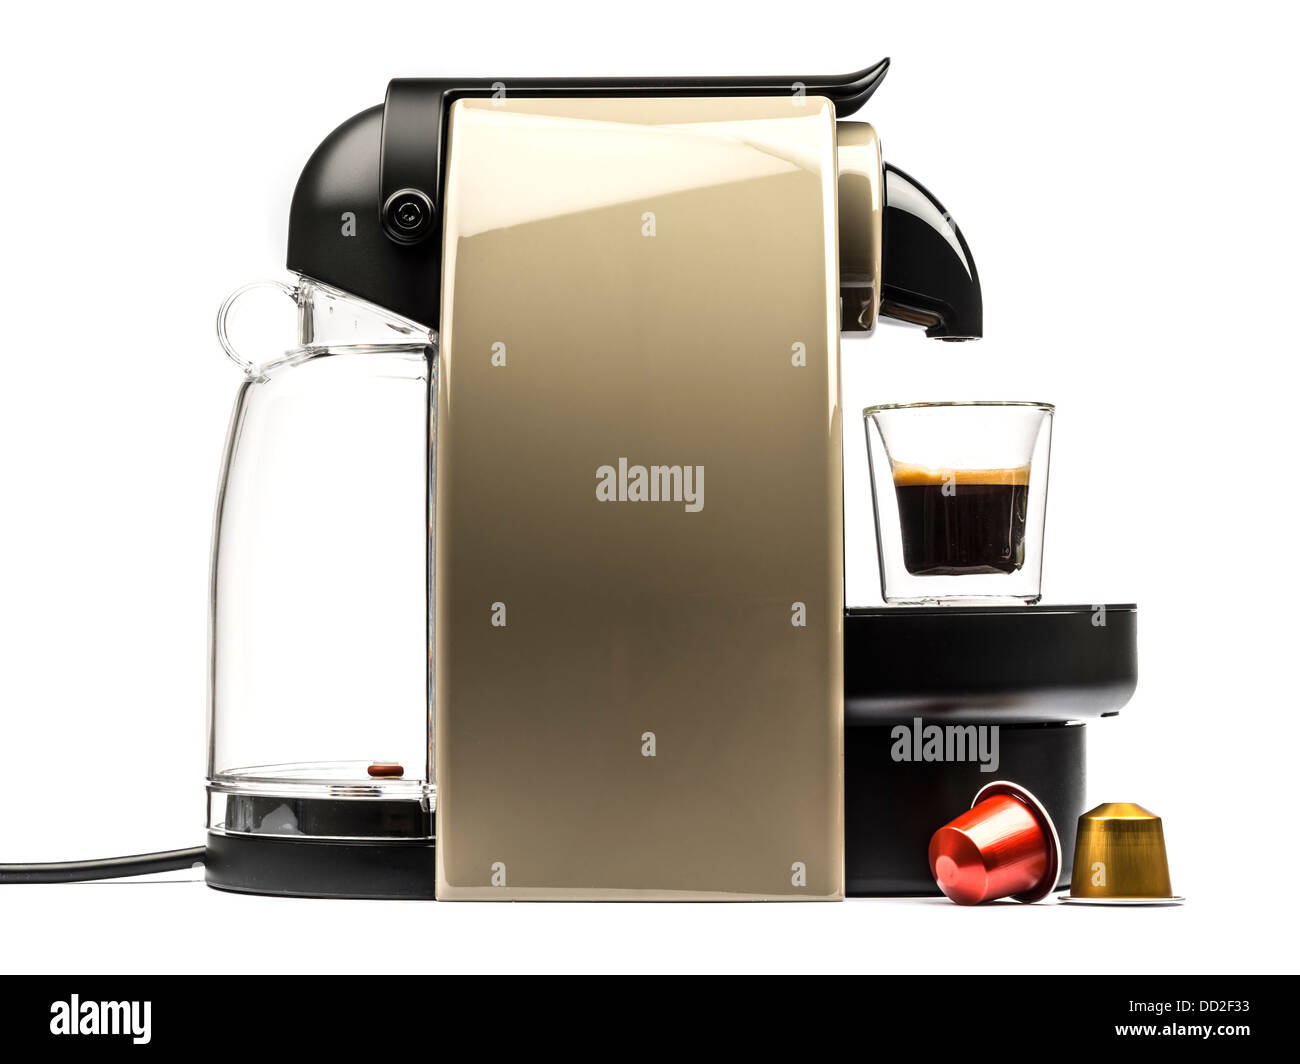 https://c8.alamy.com/compes/dd2f33/vista-lateral-de-una-maquina-de-cafe-nespresso-recorte-aislado-sobre-fondo-blanco-dd2f33.jpg